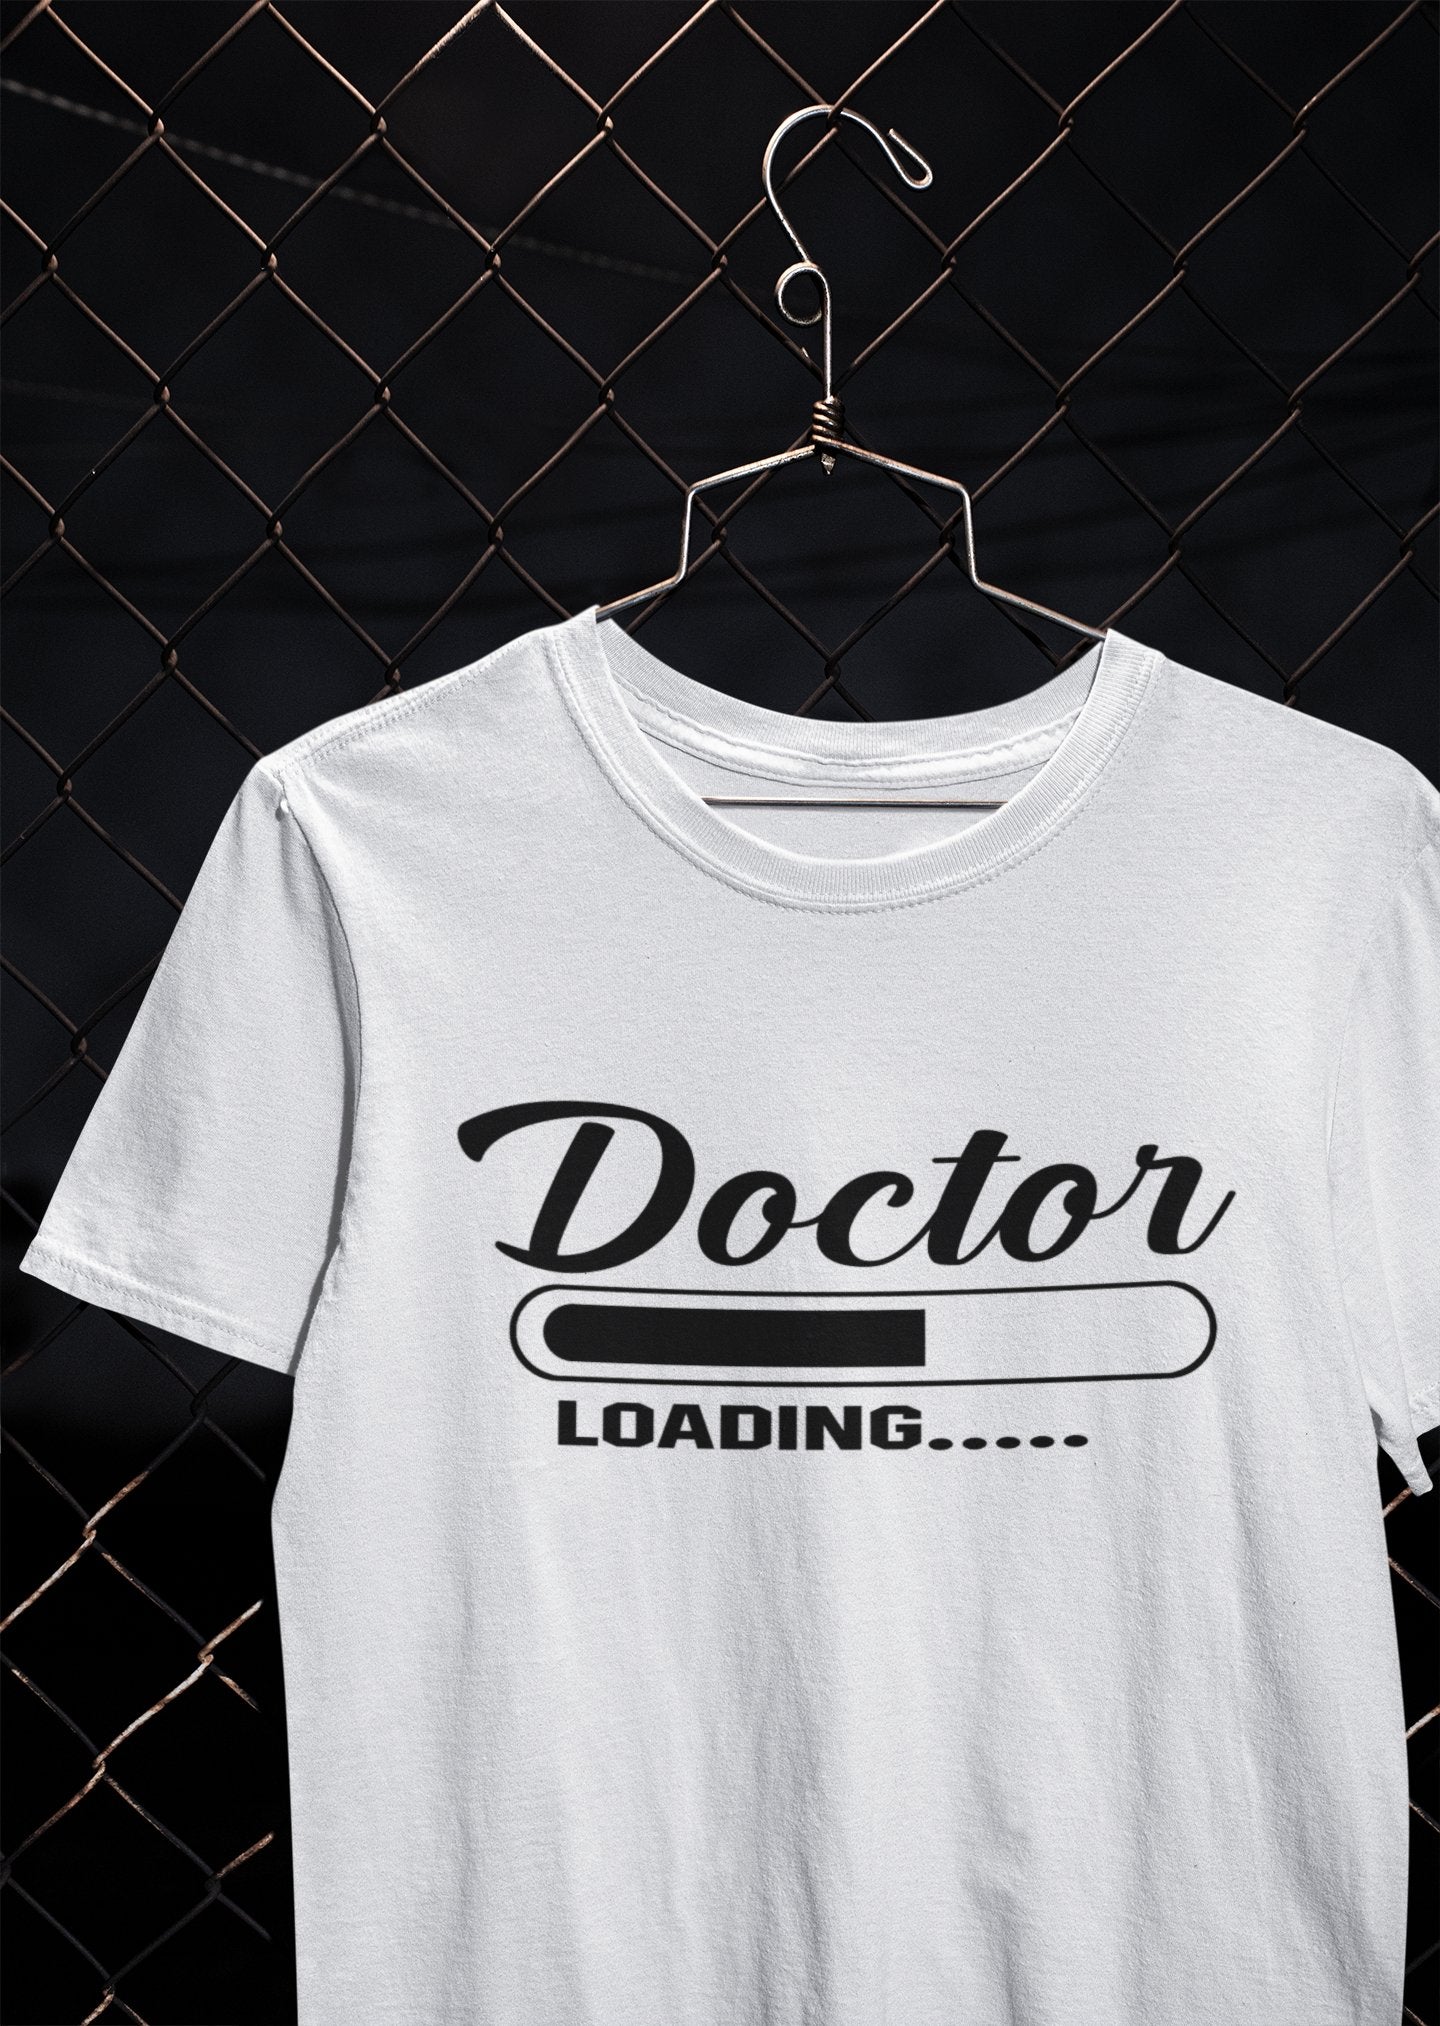 Doctor Loading Women Half Sleeves T-shirt- FunkyTeesClub - Funky Tees Club